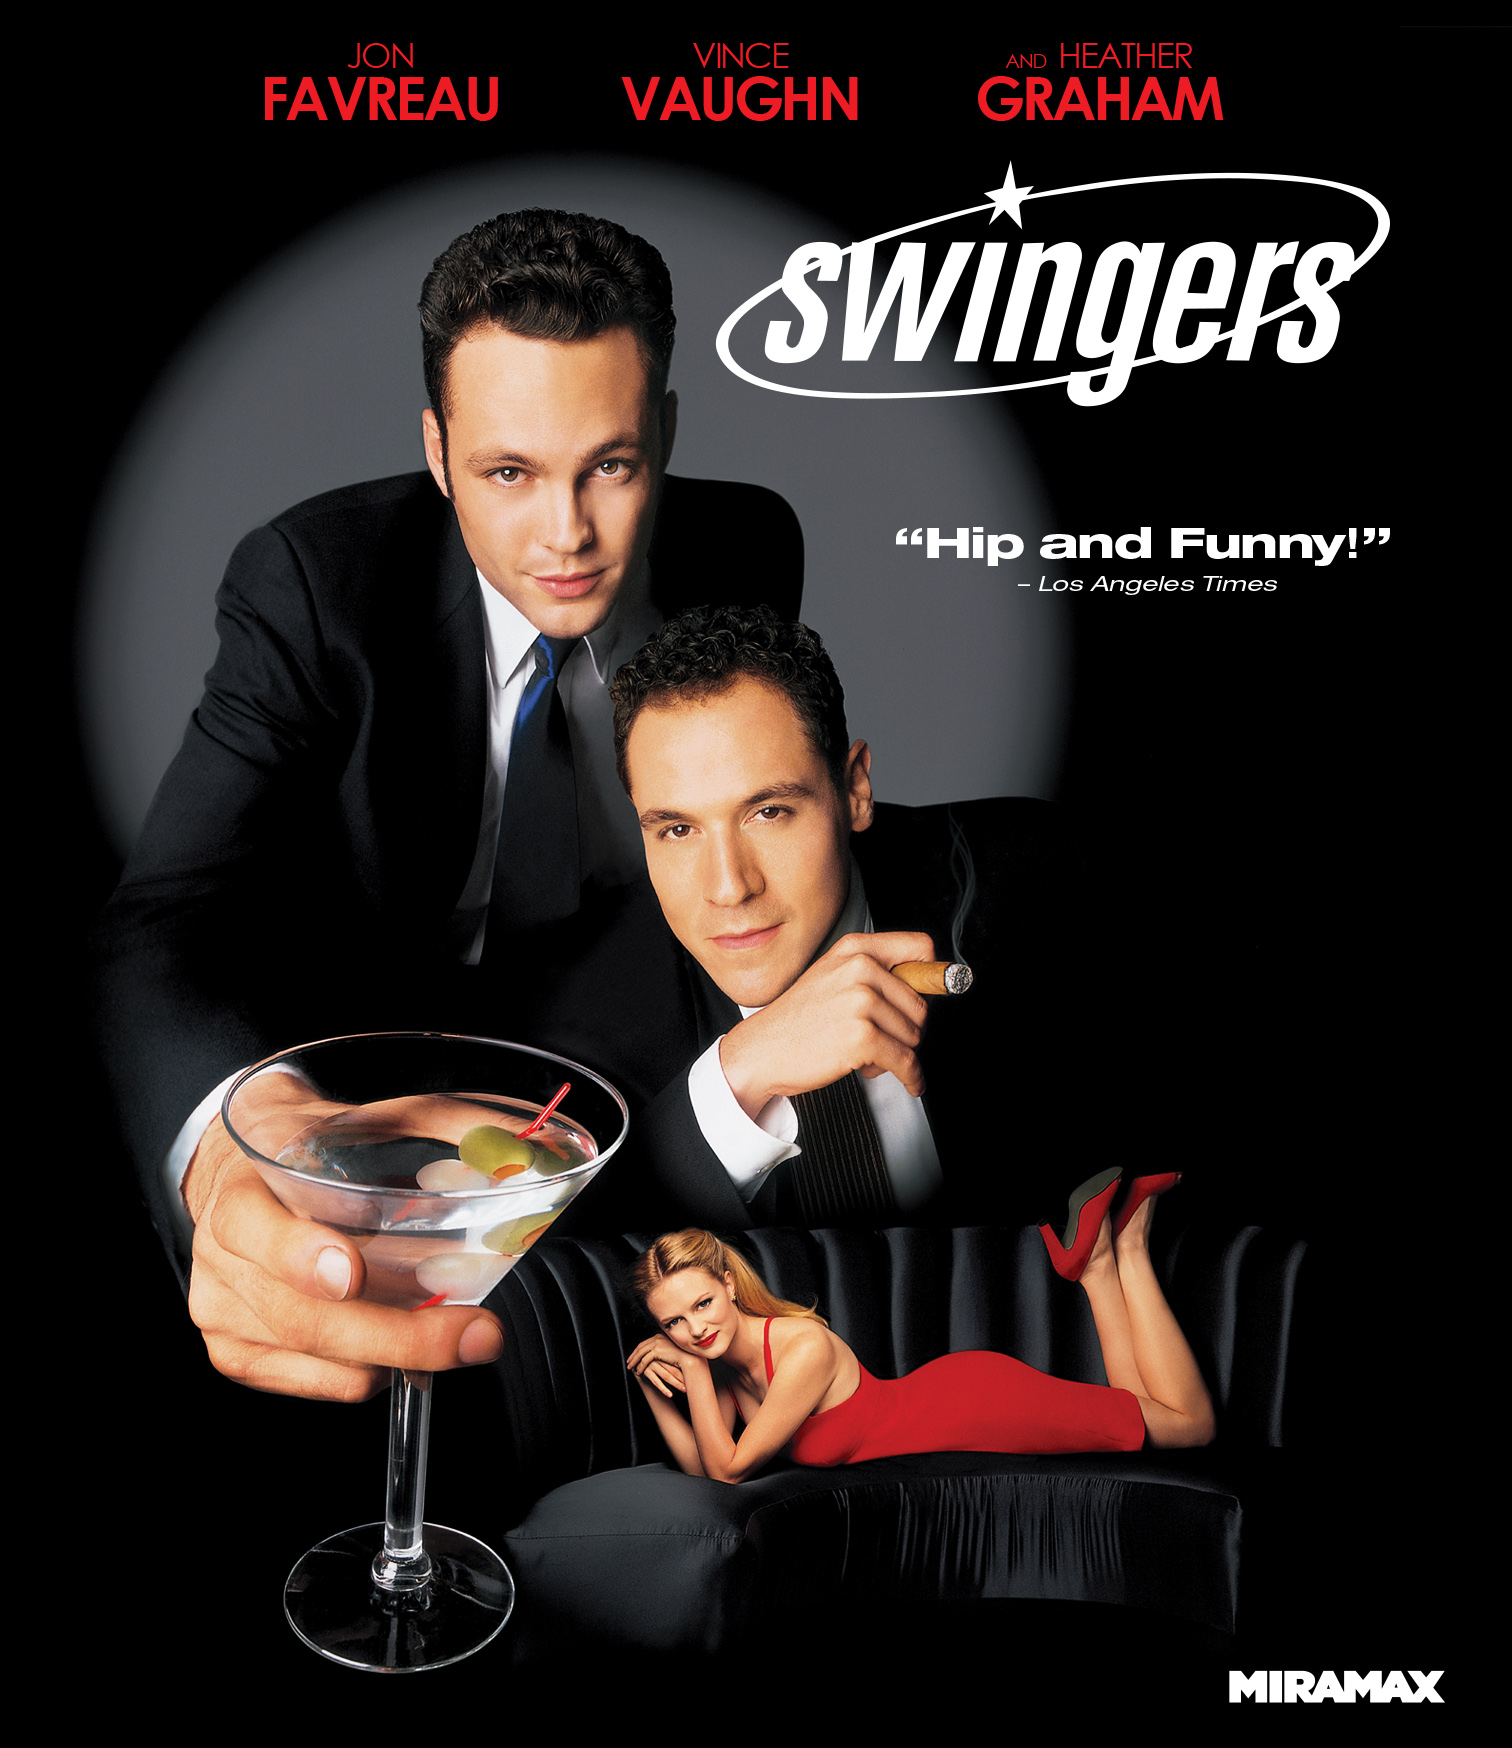 Swingers [Blu-ray] [1996]